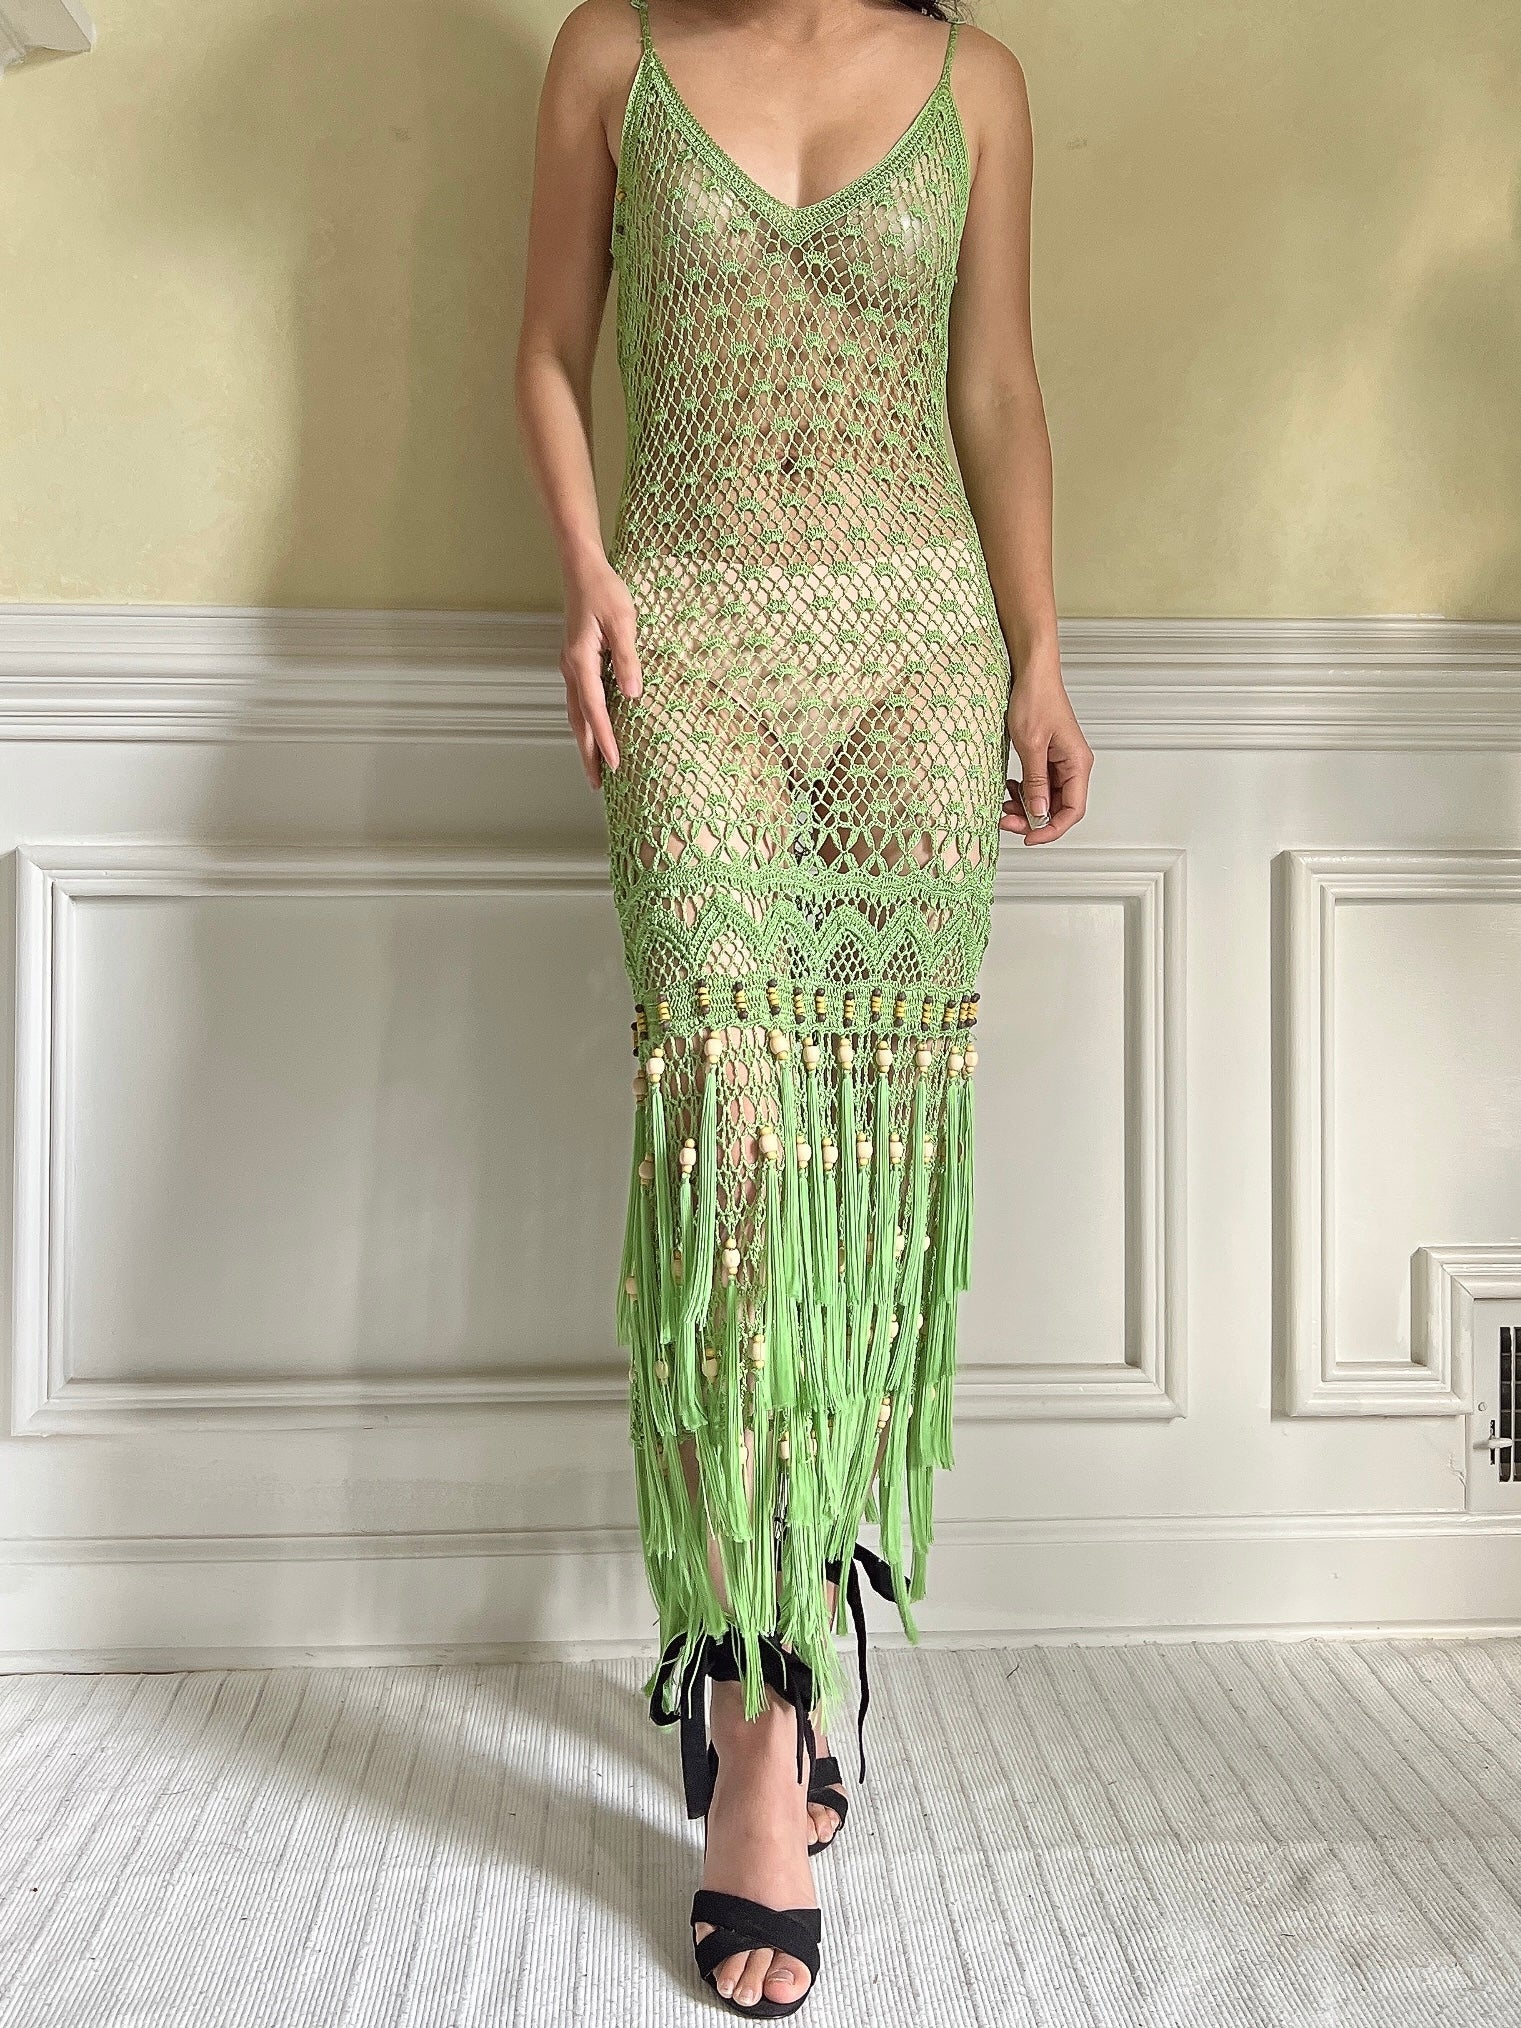 Vintage Light Green Fringe Crochet Dress - S-M